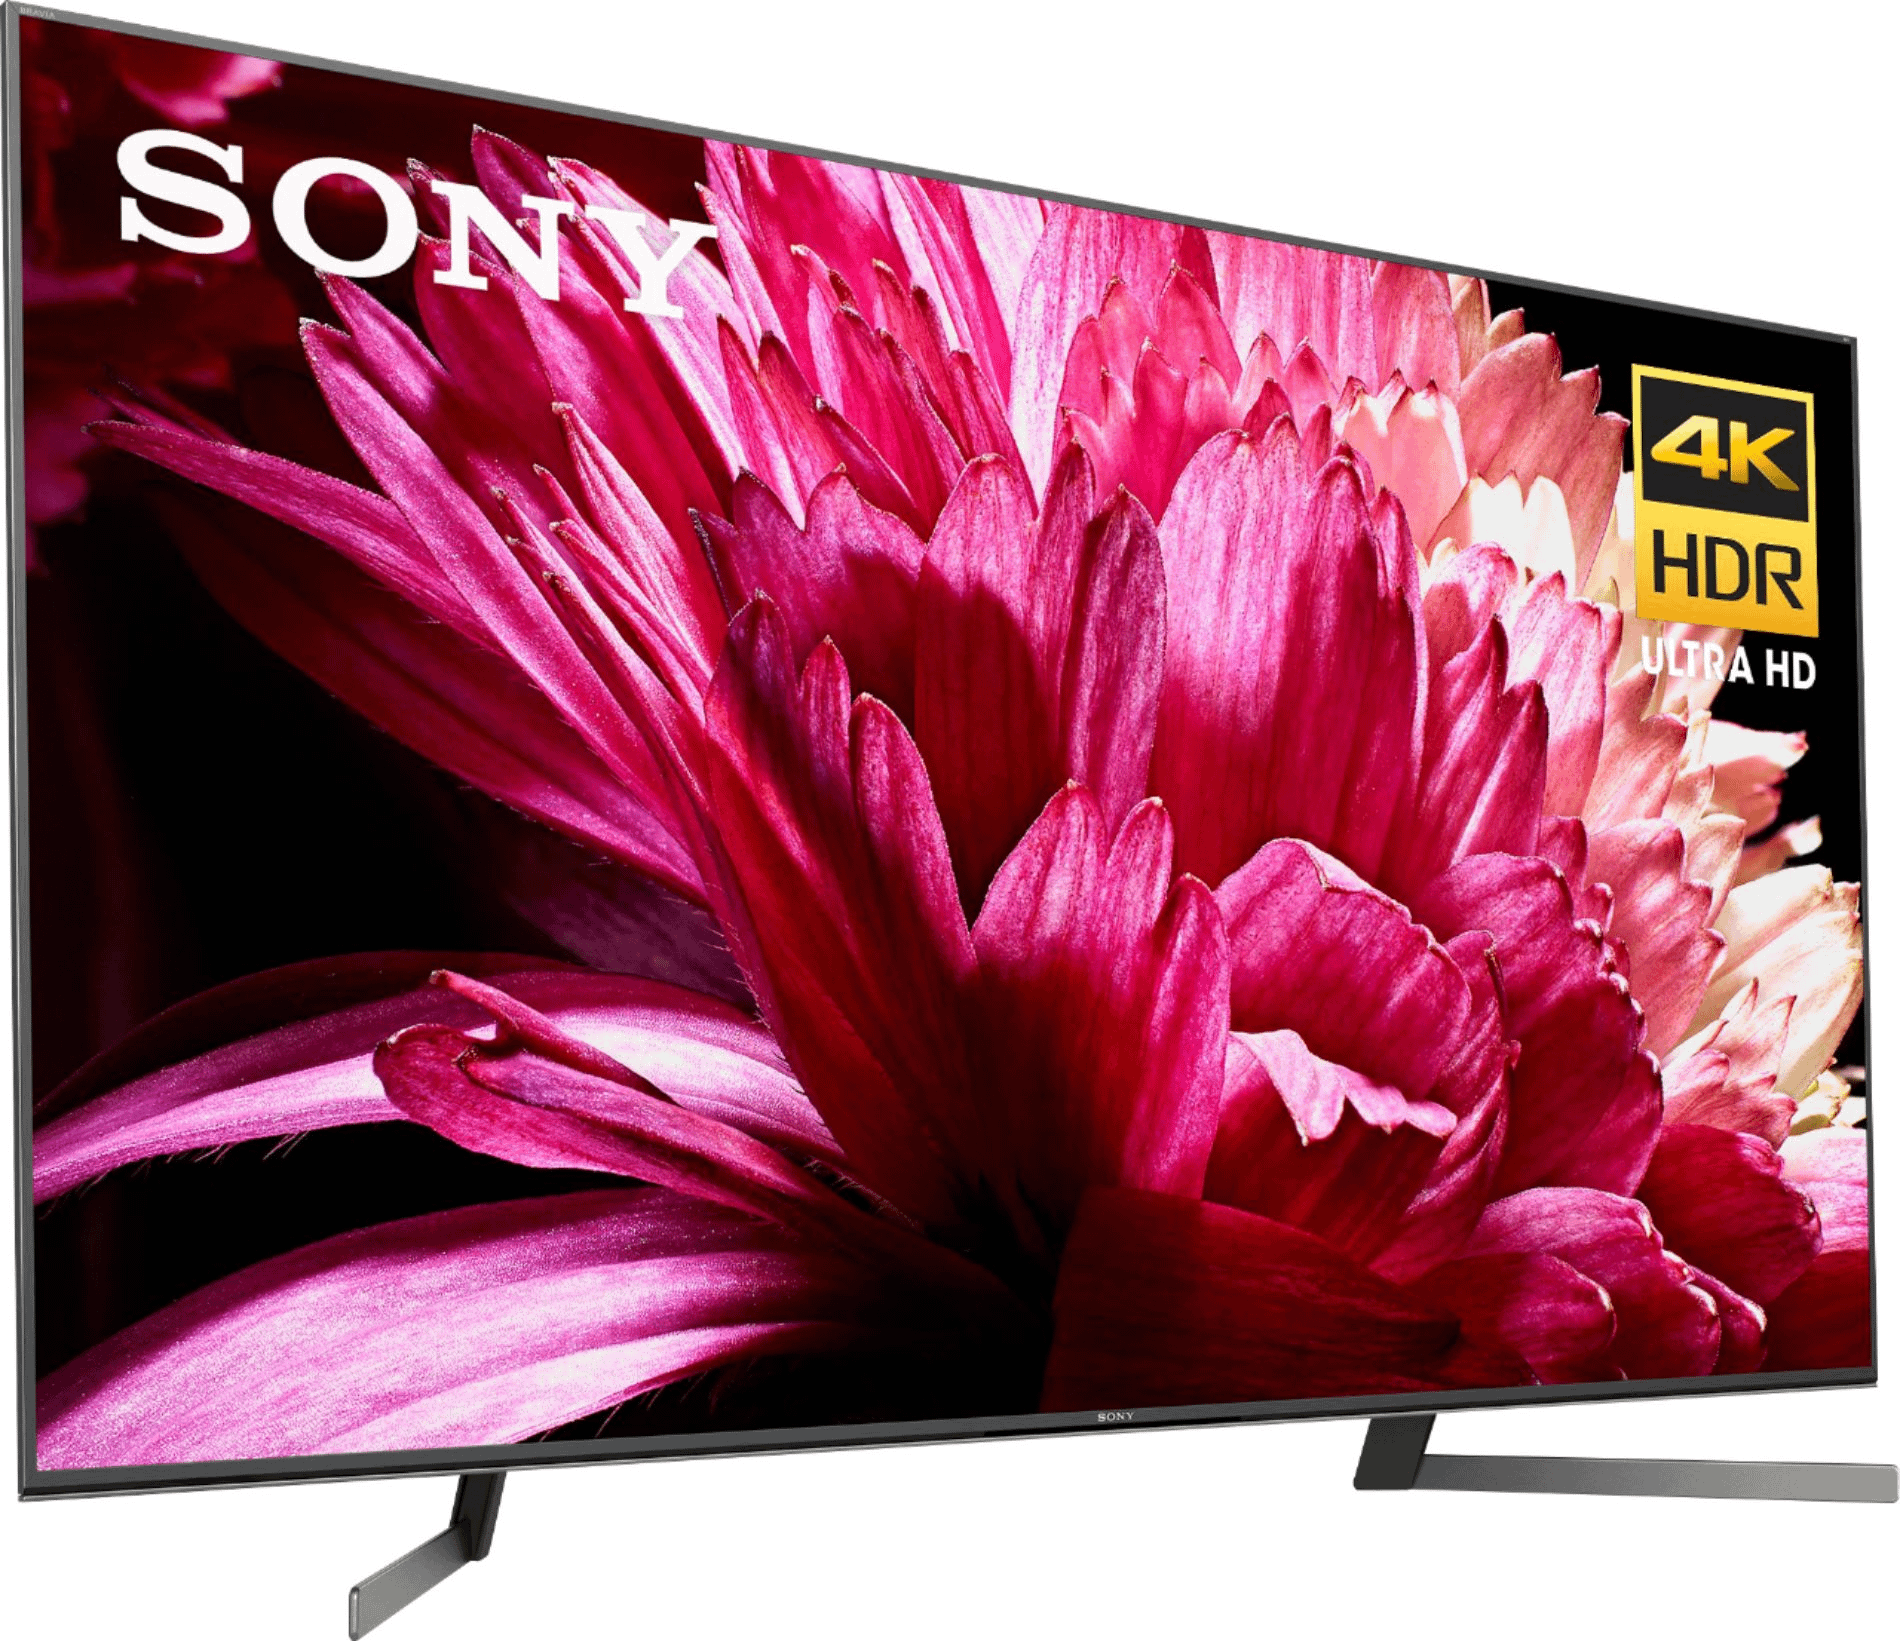 Sony 65-inch 4k Ultra HD TV